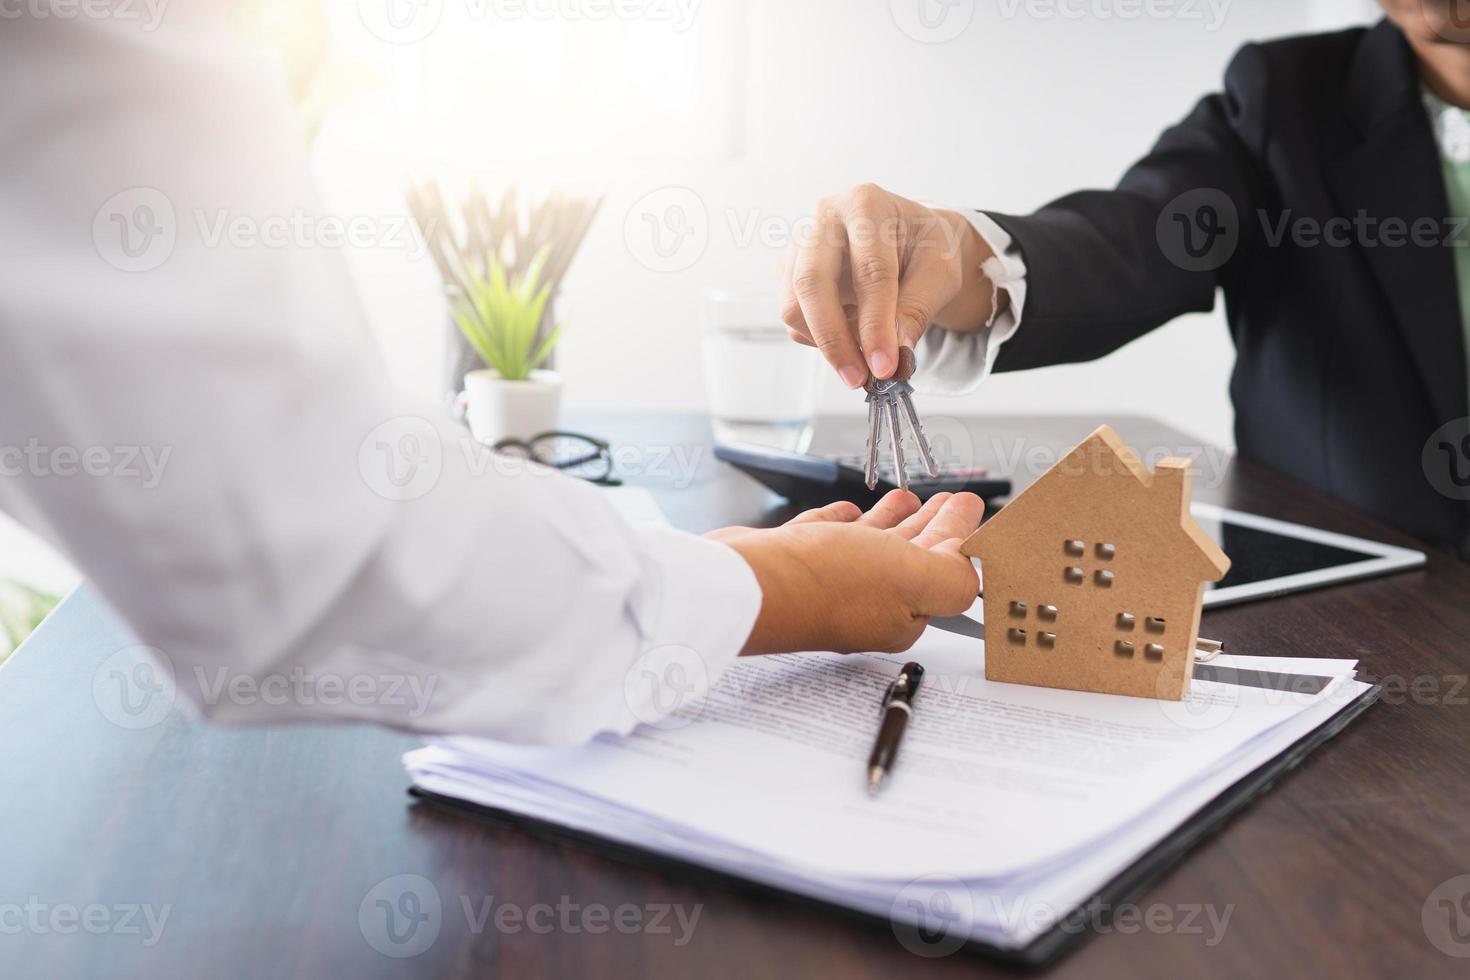 empresario entregando llaves a una persona junto a una tableta, una casa modelo y un contrato foto